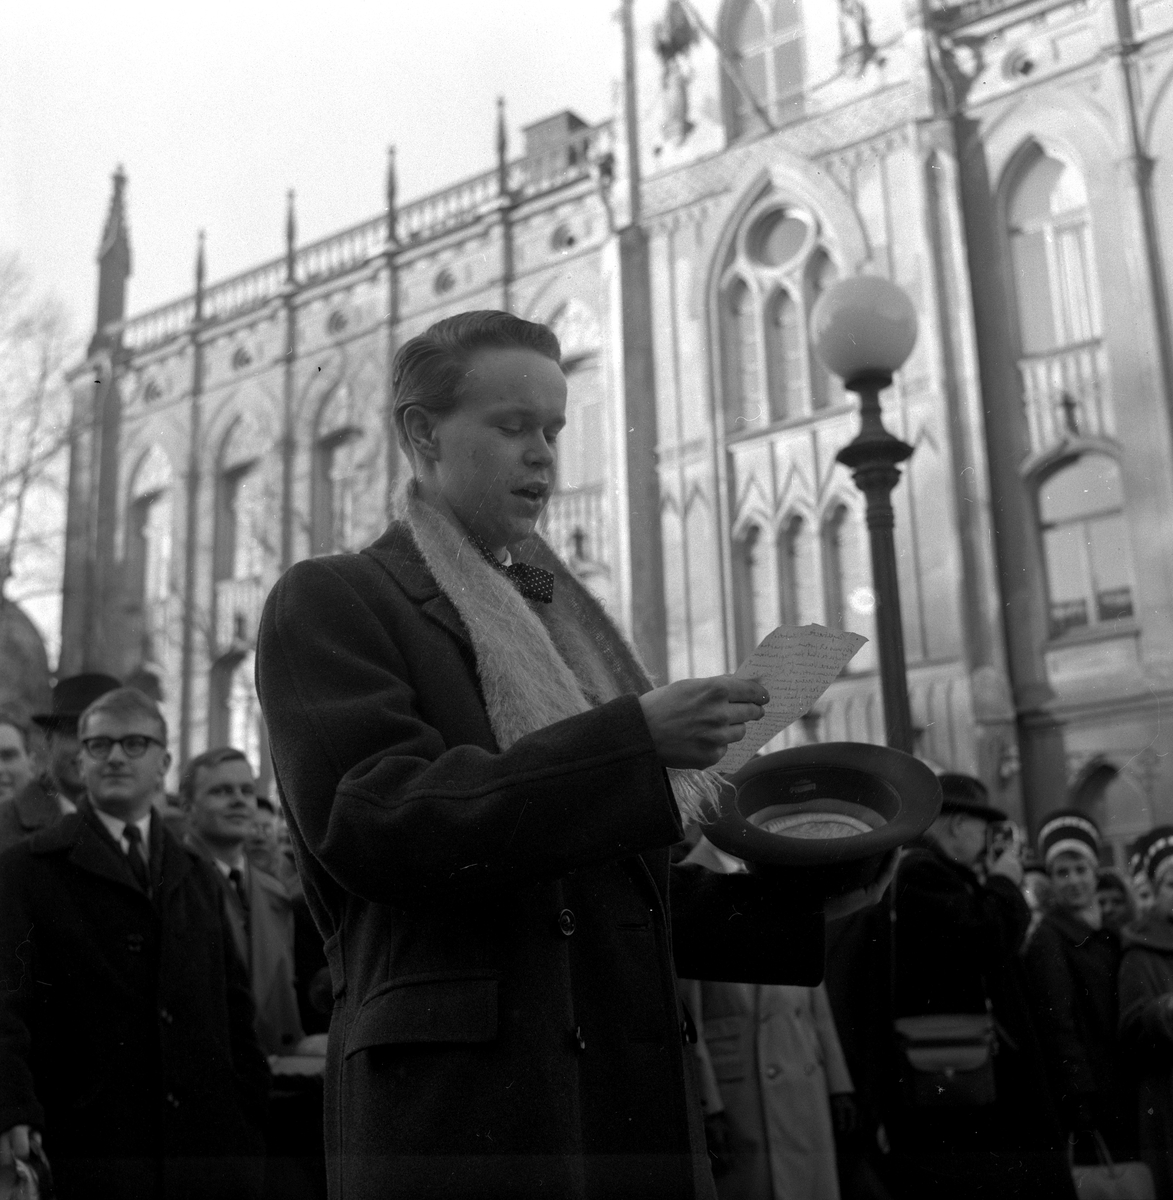 Studentspex vid Engelbrekt på Stortorget.
9 mars 1959.